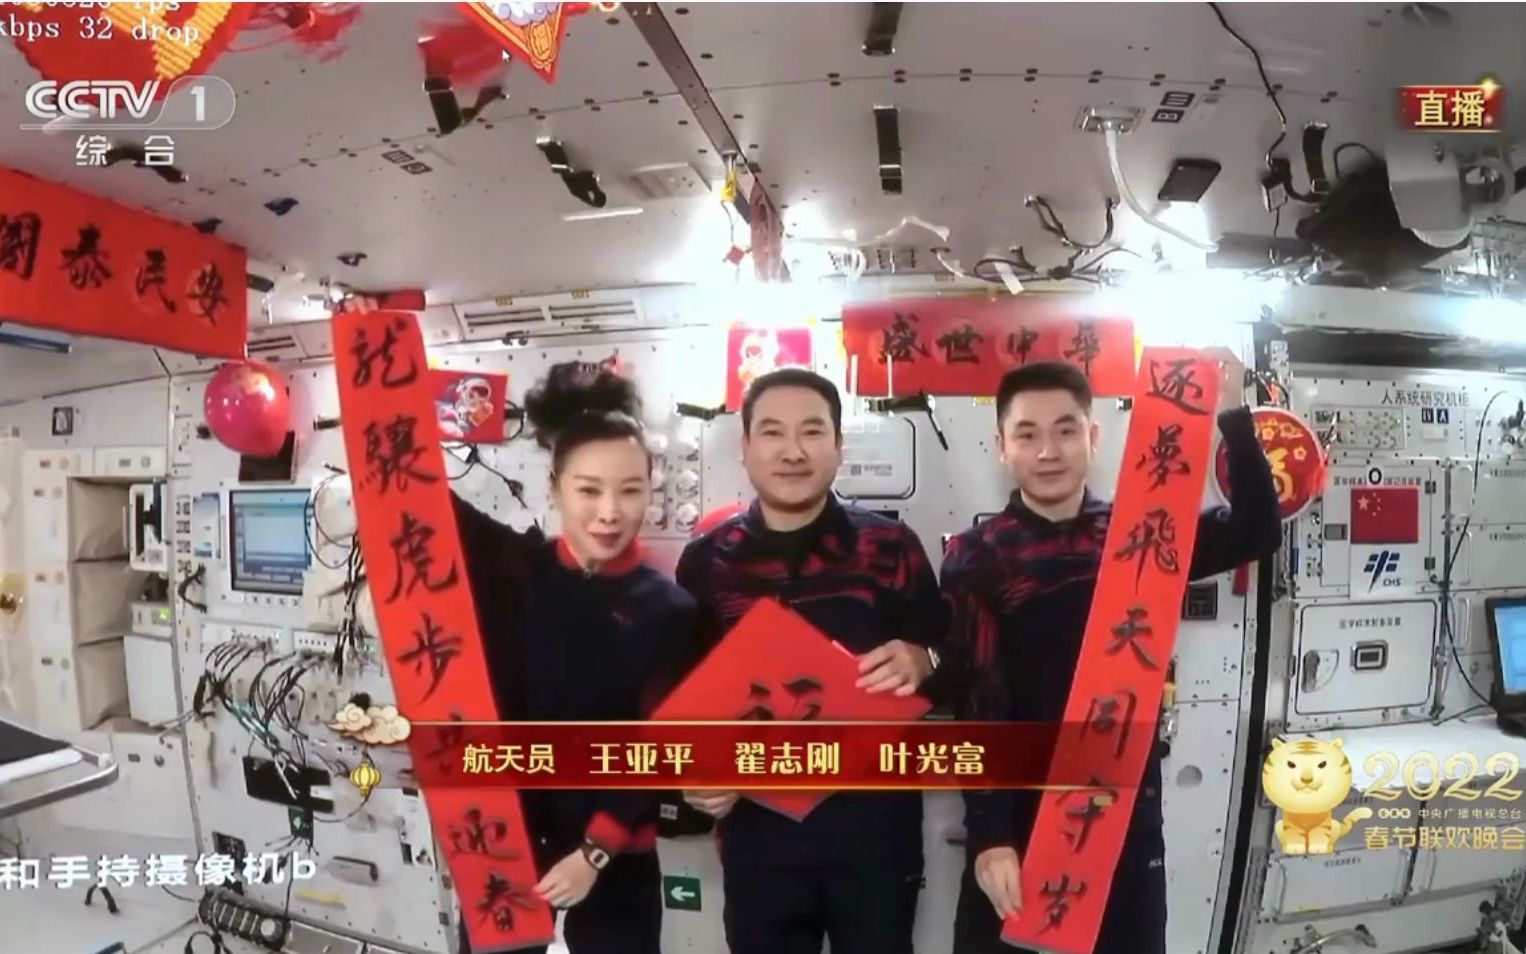 中国天宫空间站航天员向全国人民拜年!